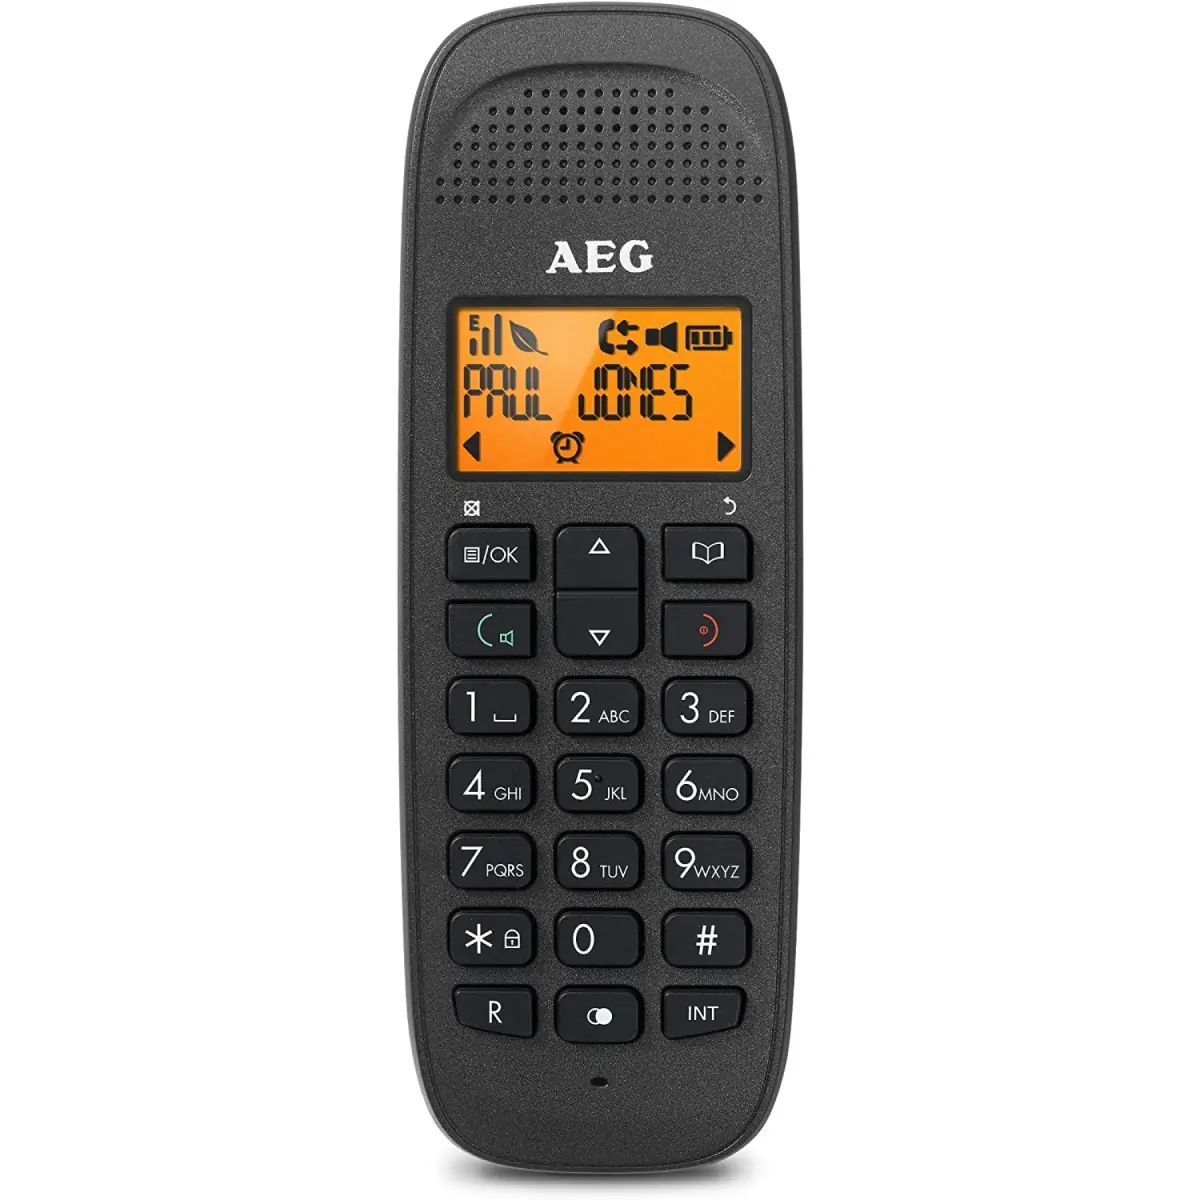 AEGD81-pakket met headset